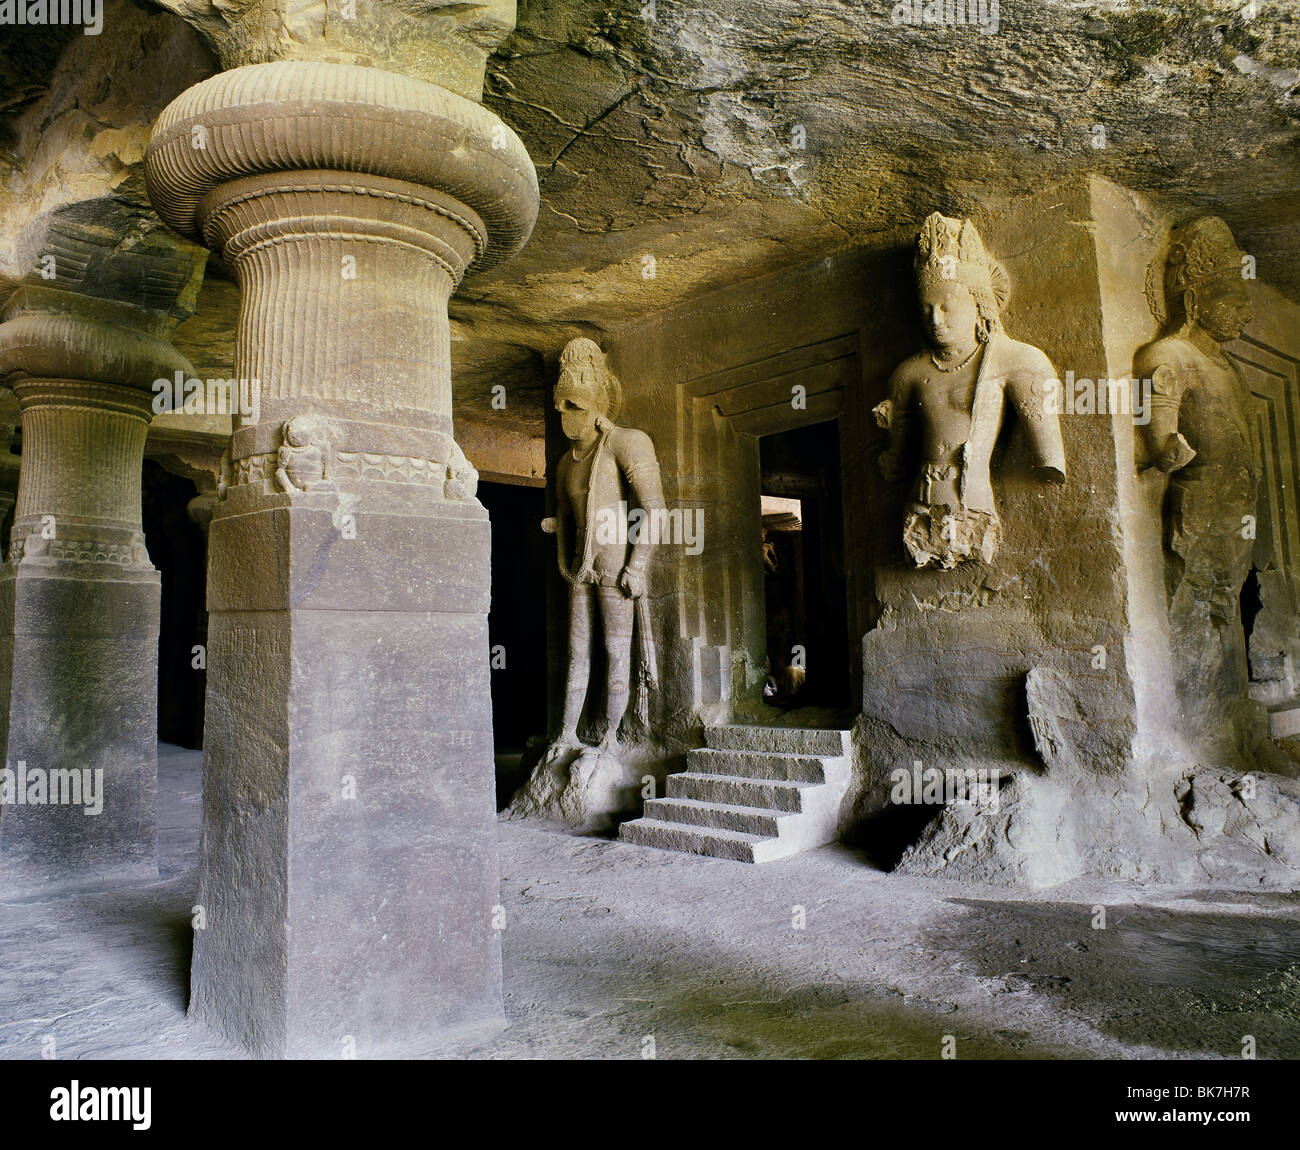 Grotte d'Elephanta, Site du patrimoine mondial de l'UNESCO, l'île d'Elephanta, Mumbai, Inde Banque D'Images